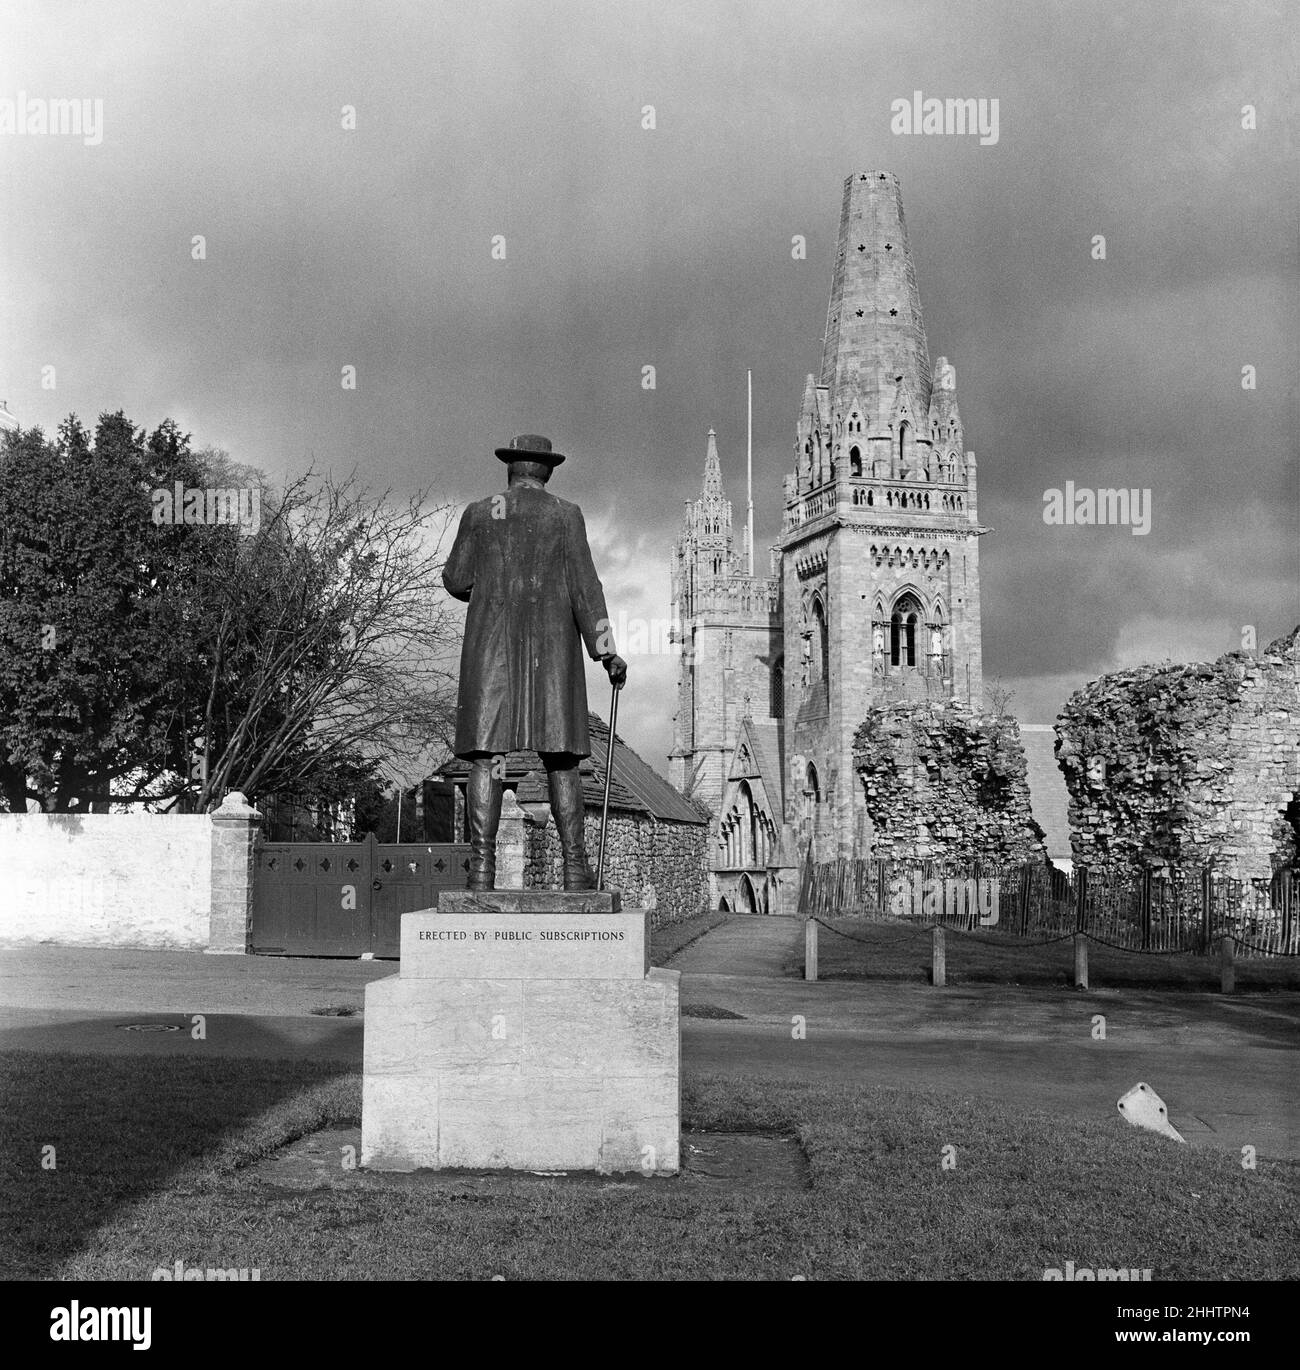 Cattedrale di Llandaff e Statua di James Rice Buckley di William Goscombe John. Llandaff, Galles del Sud. 1st marzo 1954. Foto Stock